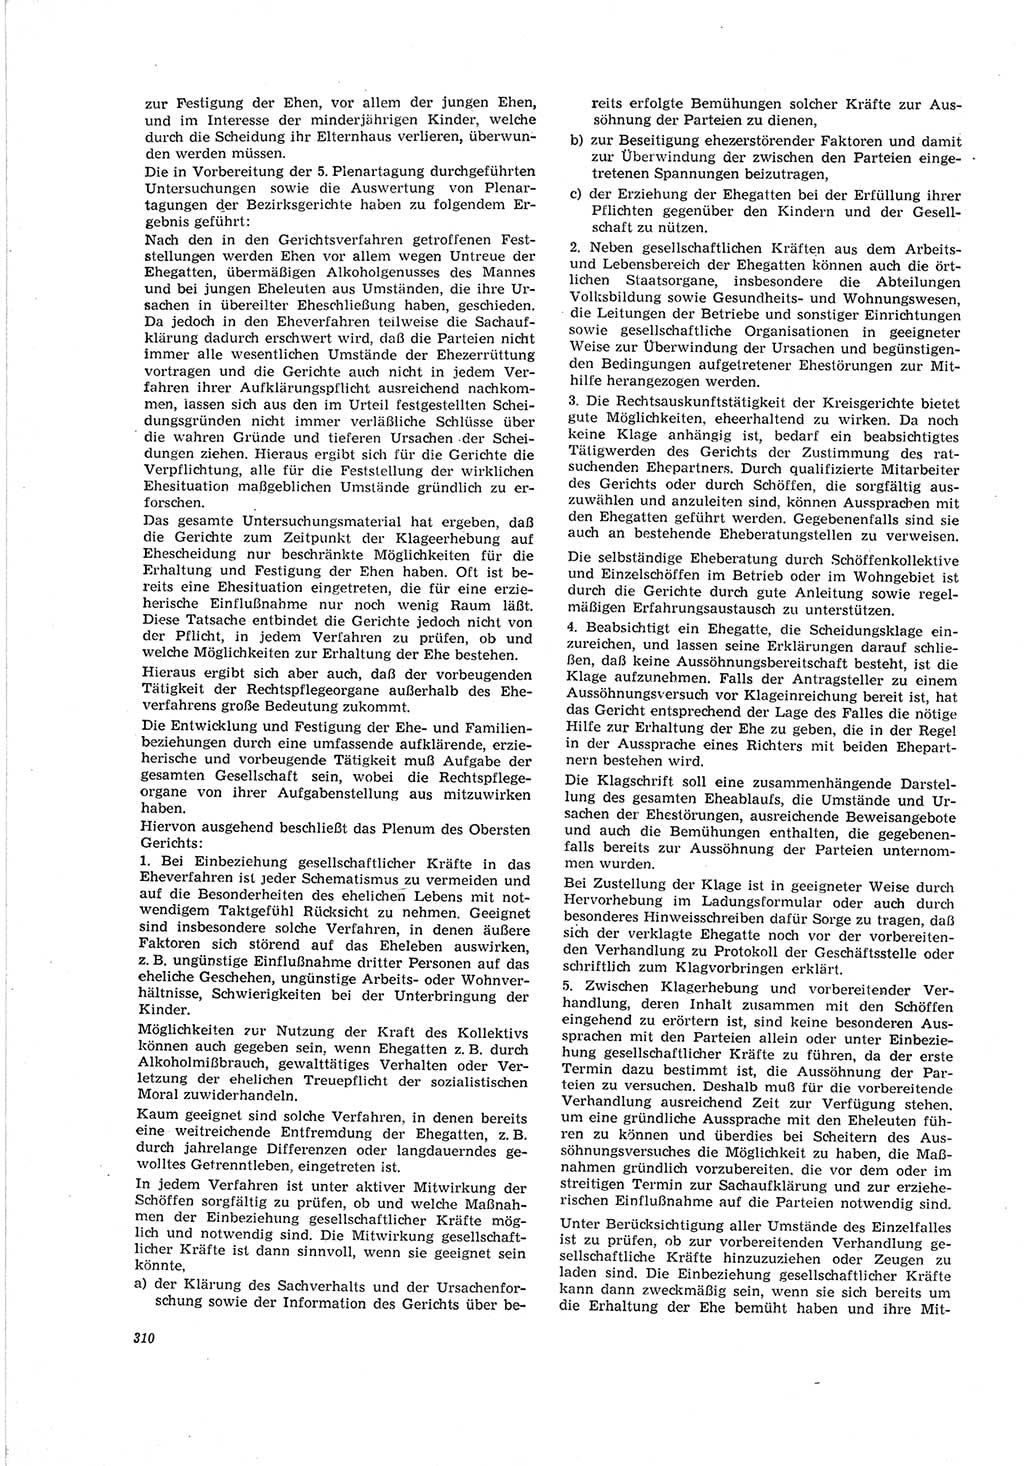 Neue Justiz (NJ), Zeitschrift für Recht und Rechtswissenschaft [Deutsche Demokratische Republik (DDR)], 19. Jahrgang 1965, Seite 310 (NJ DDR 1965, S. 310)